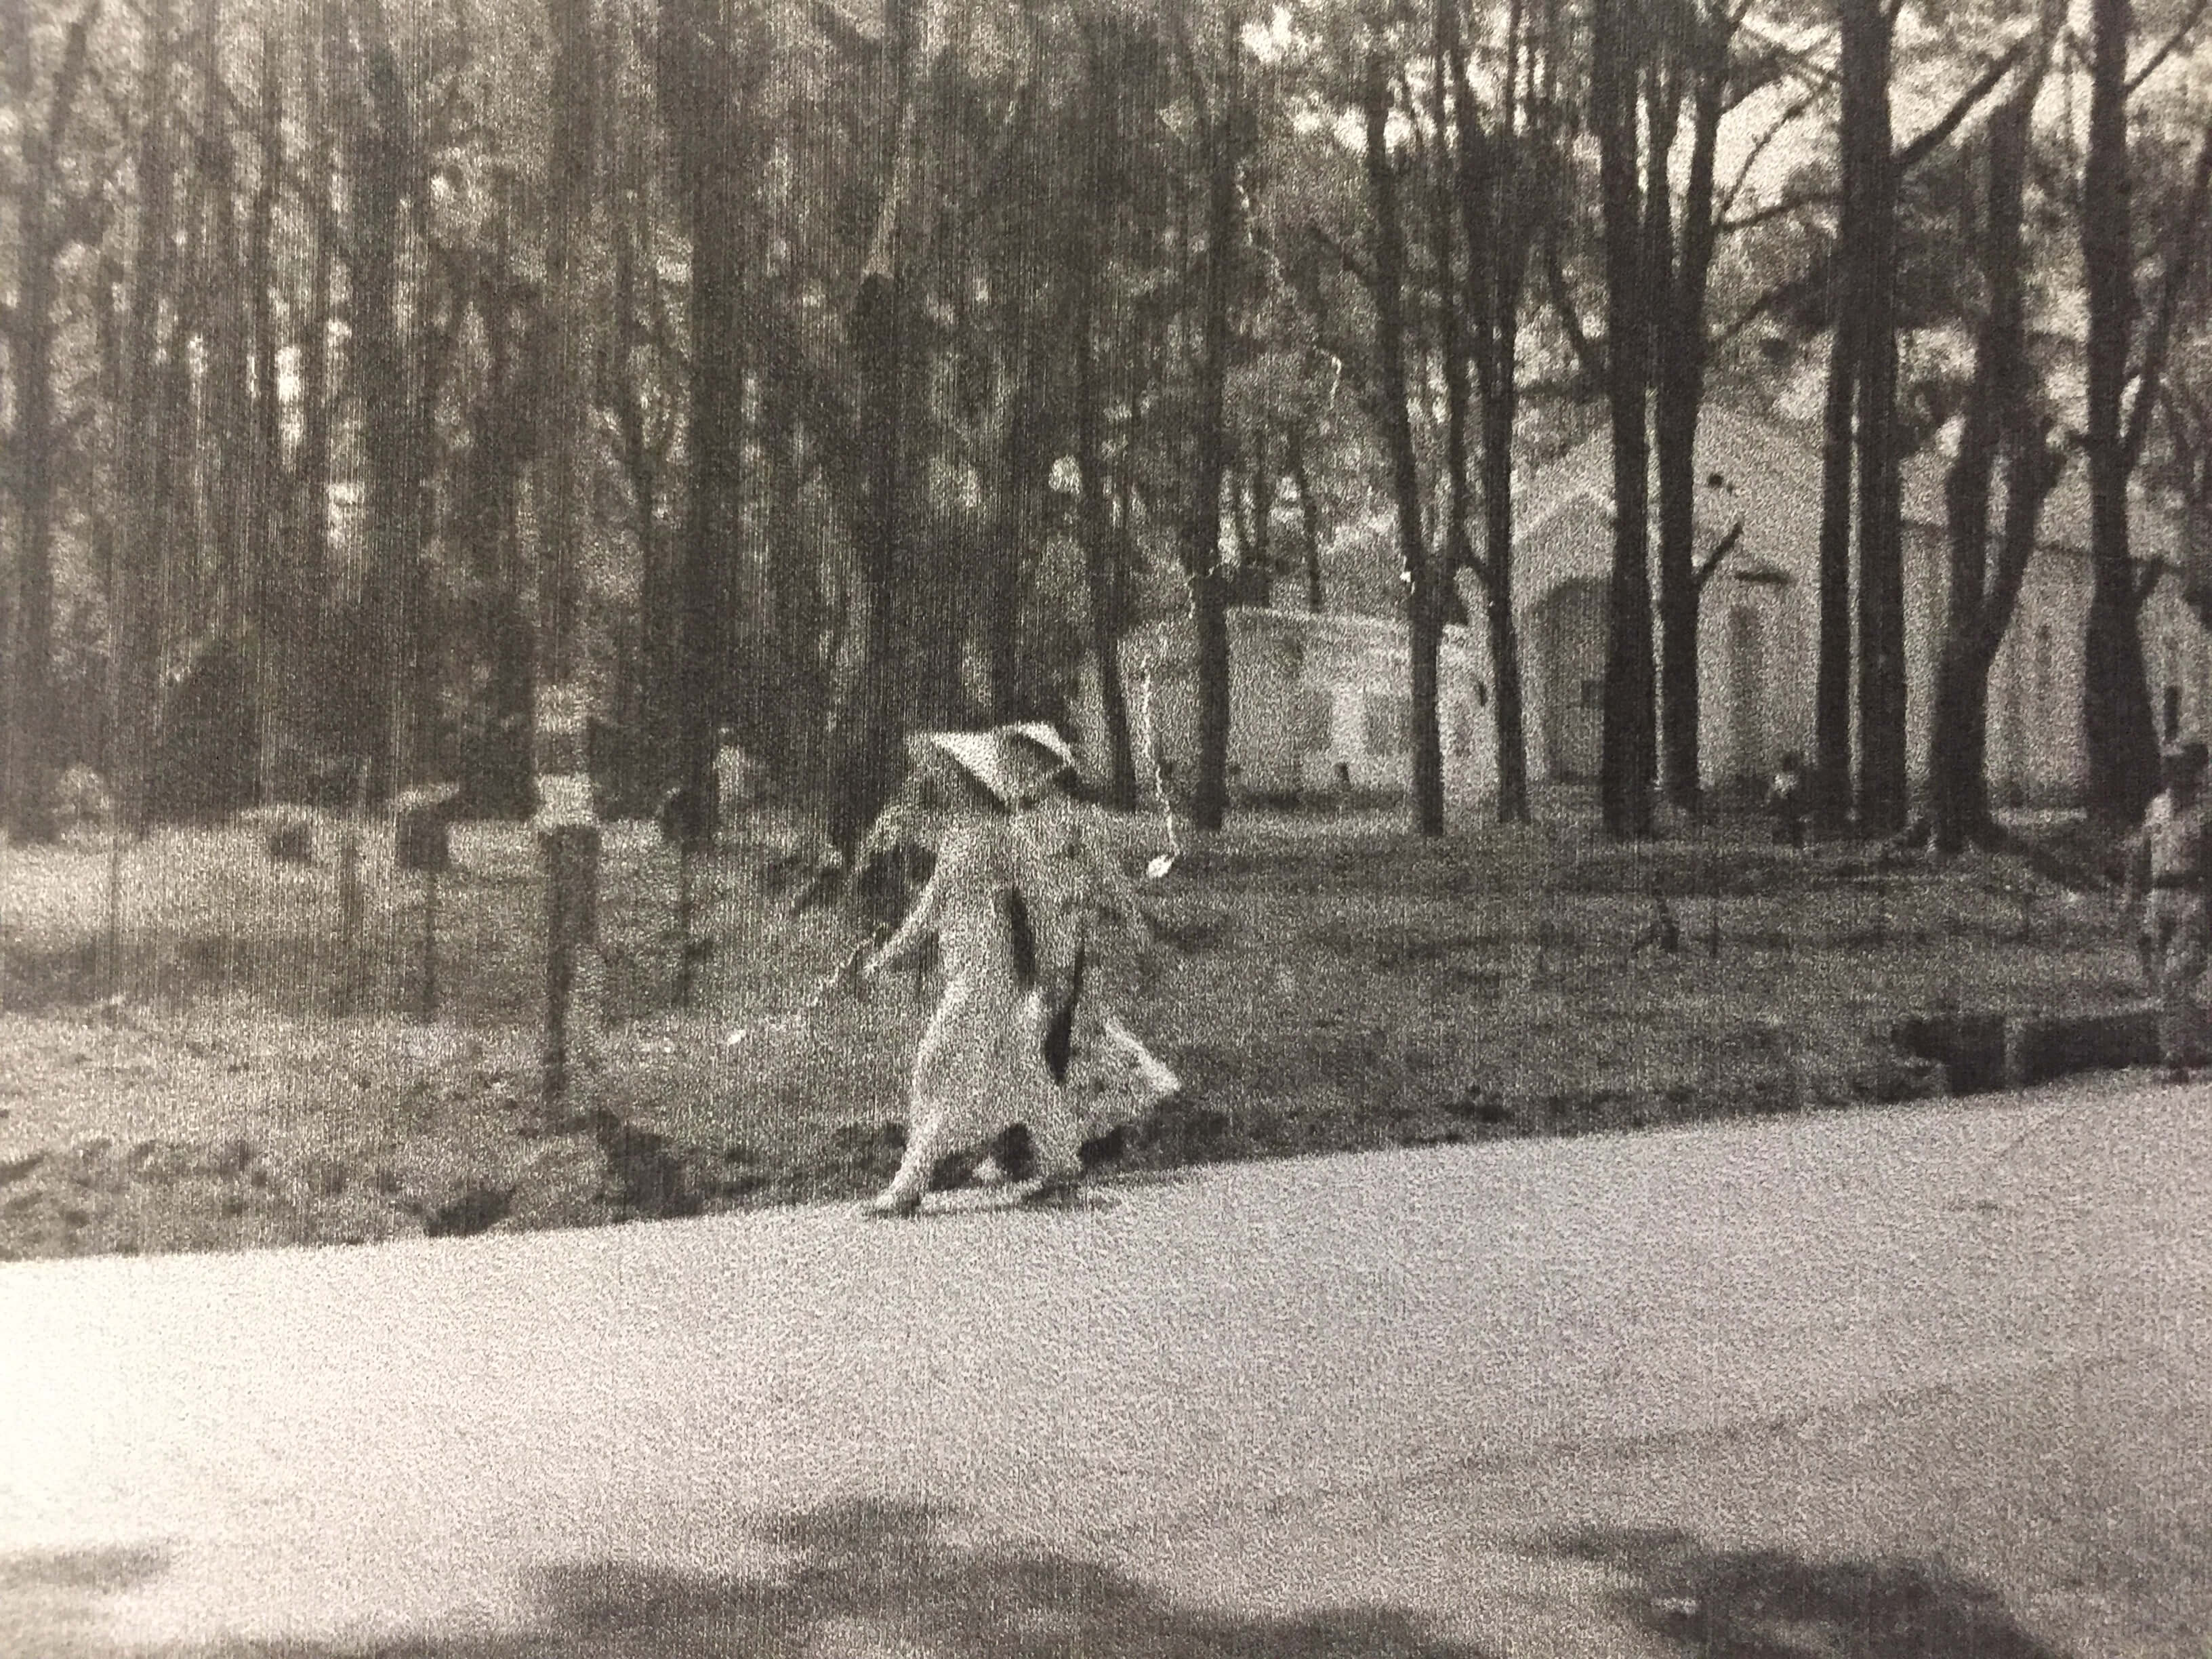 Two women walking along a tree-lined street.